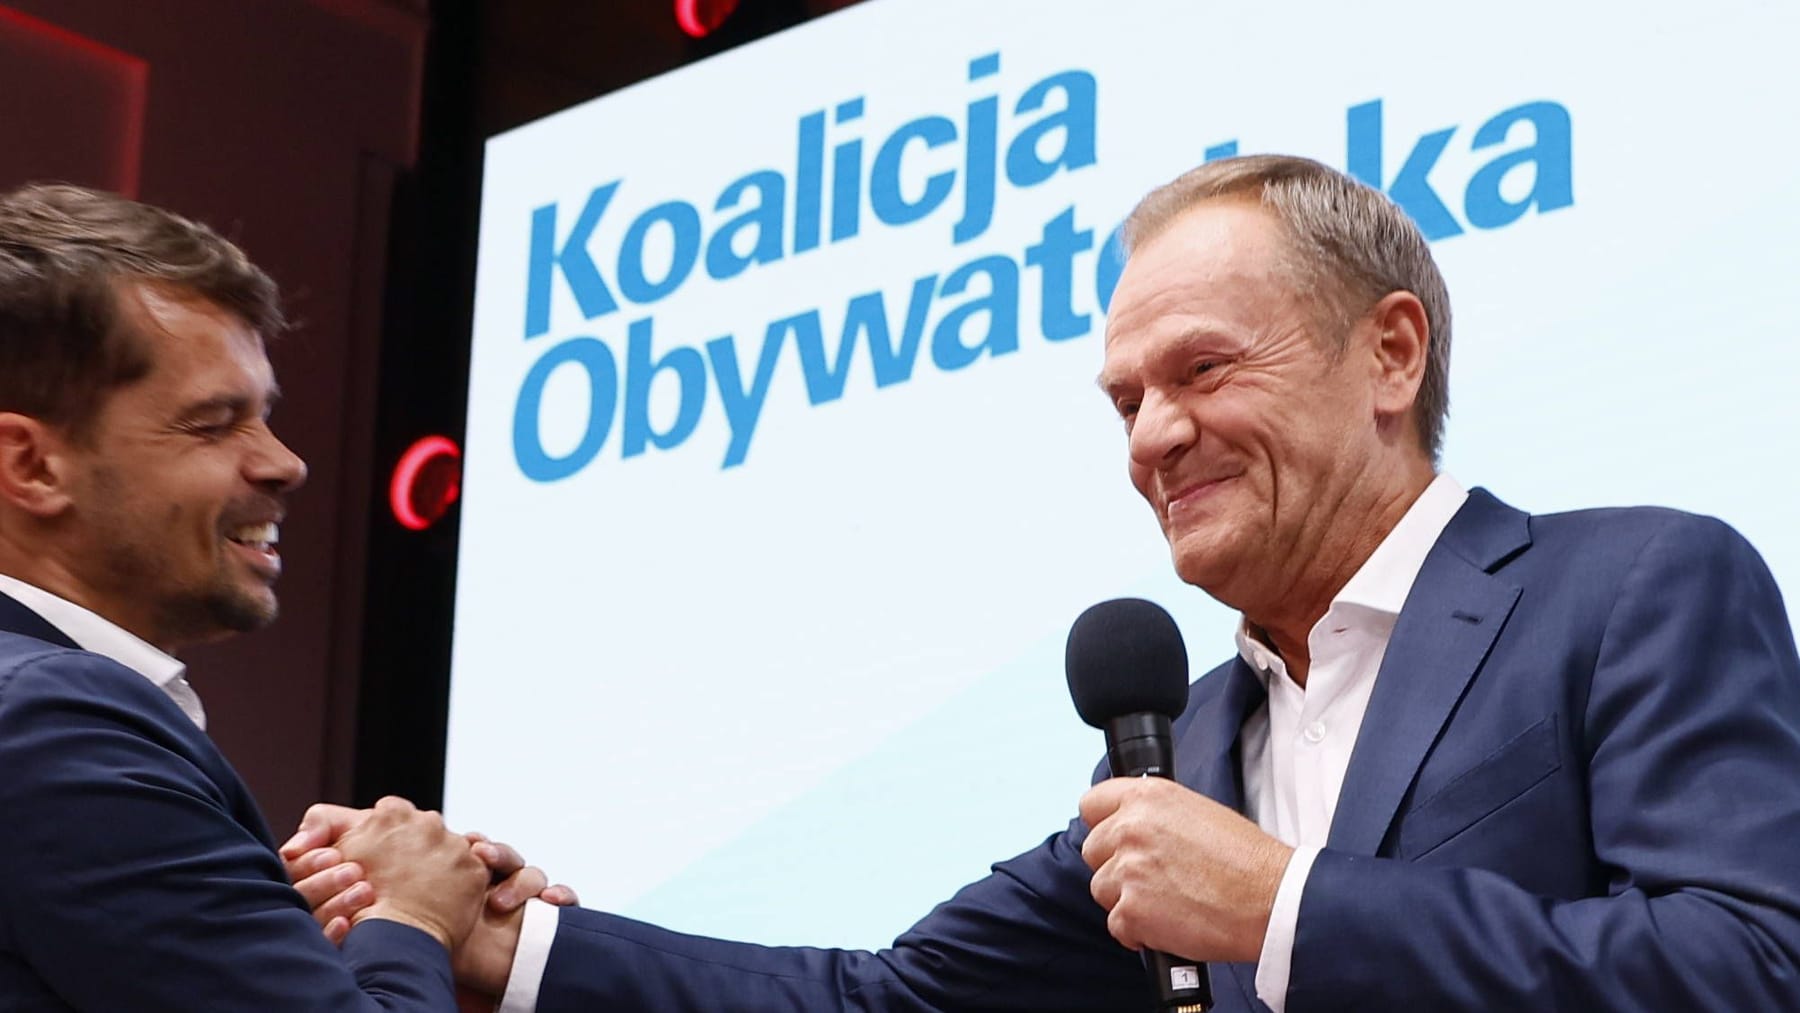 Zmiana rządu po wyborach w Polsce: PiS traci większość absolutną